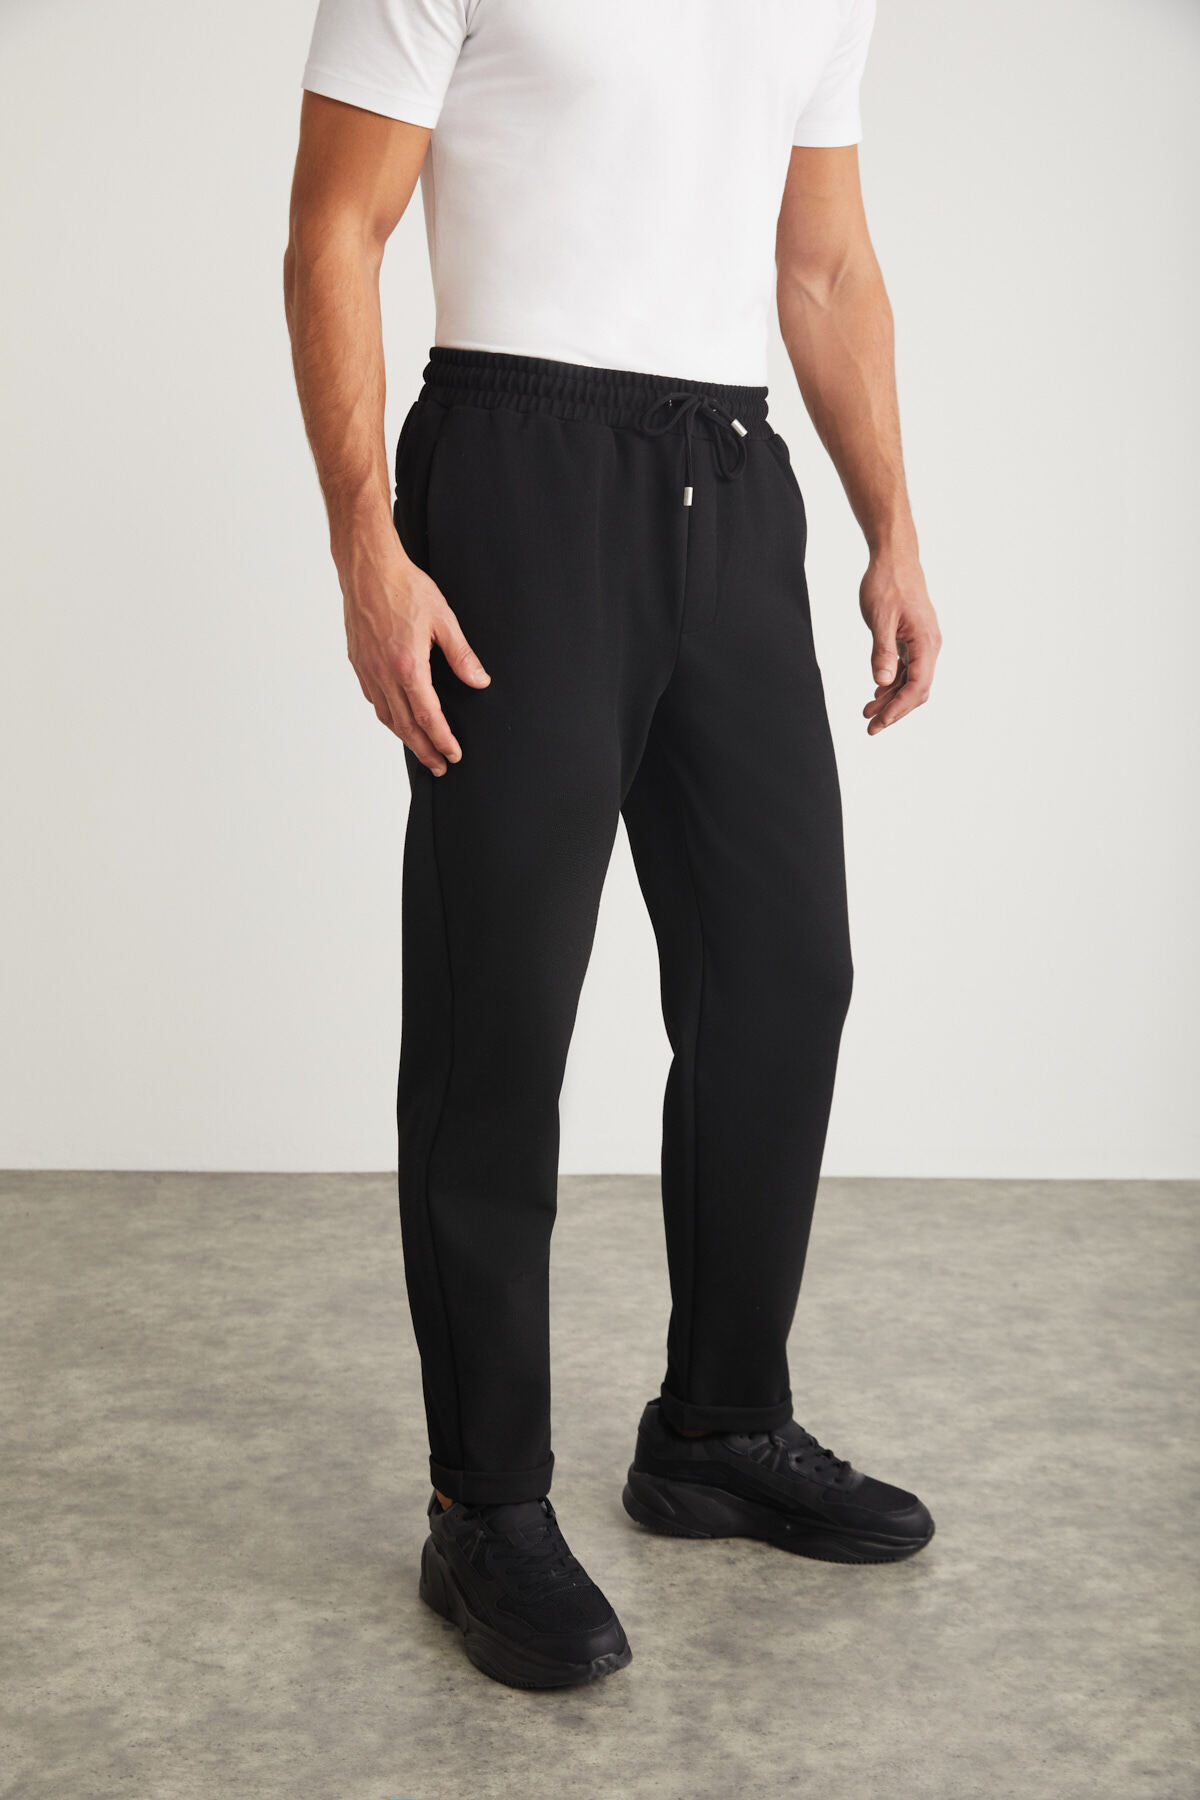 Levně GRIMELANGE Walsh Men&#39;s Pique Look Special Fabric Flexible Double Leg Corded Black Trousers with Elastic Waist